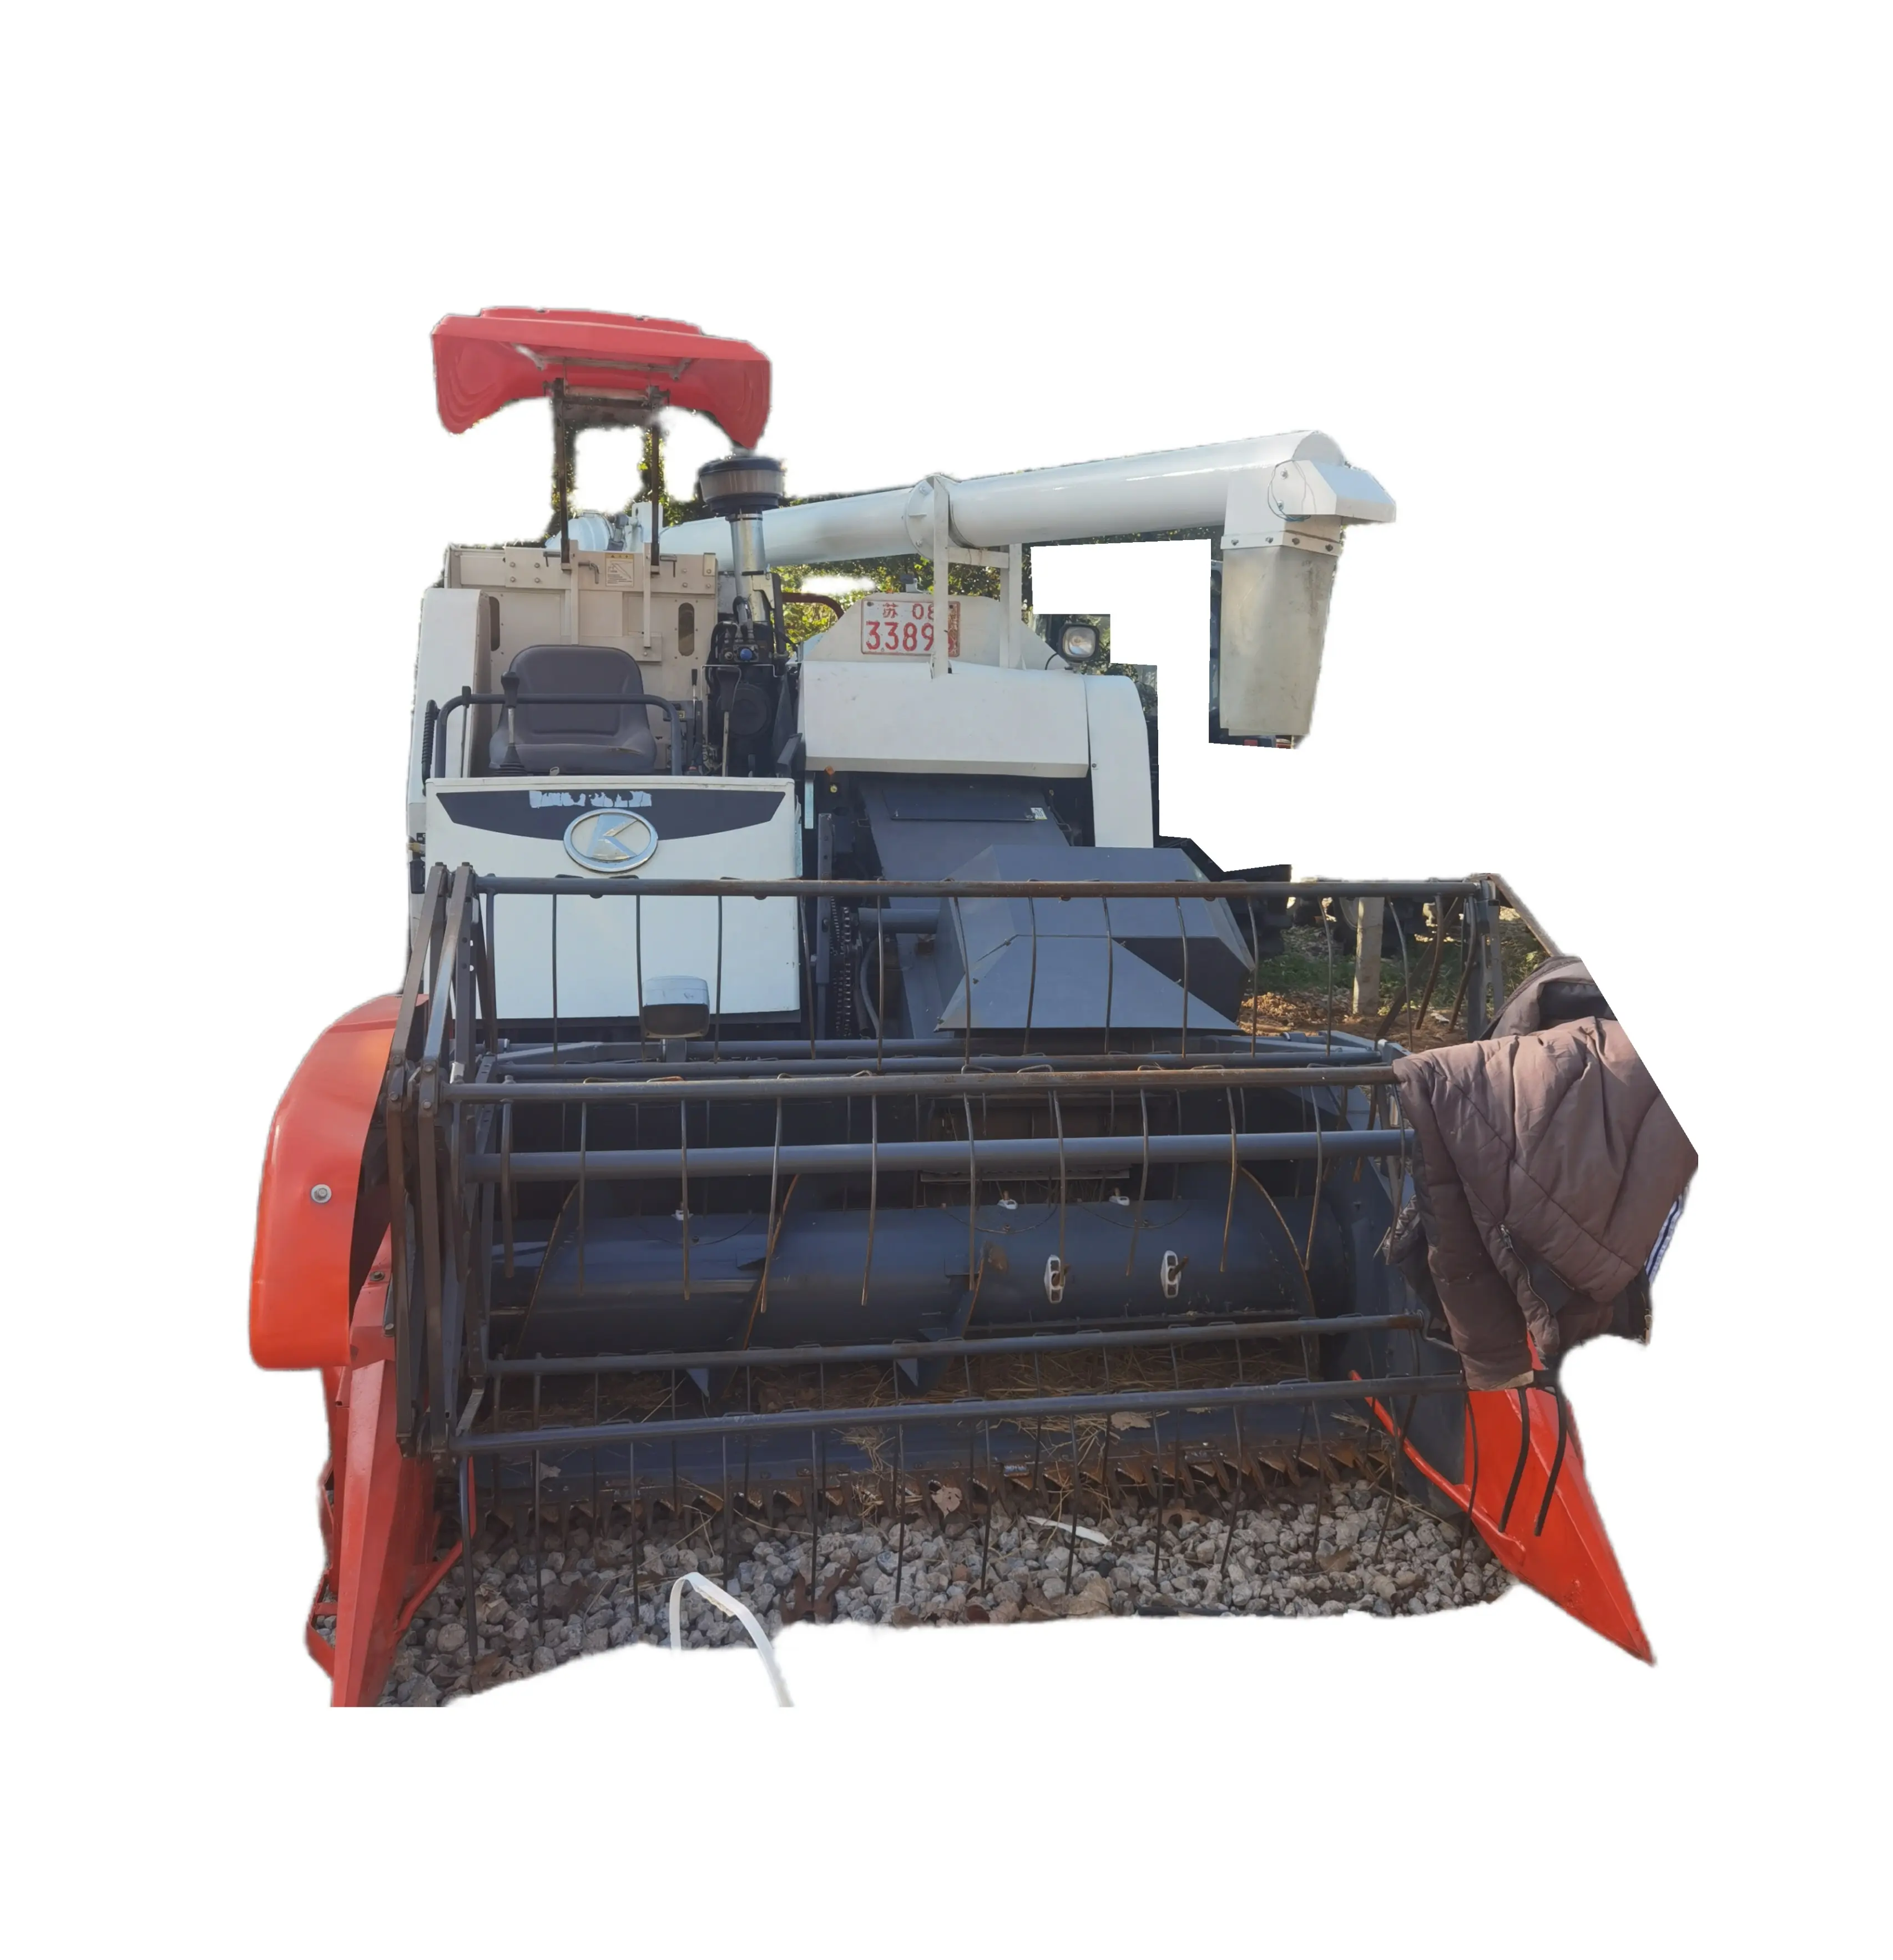 آلة حصاد ومجمعة من Kubota مستعملة، ماكينة حصاد لأرز الذرة والقمح المتاحة